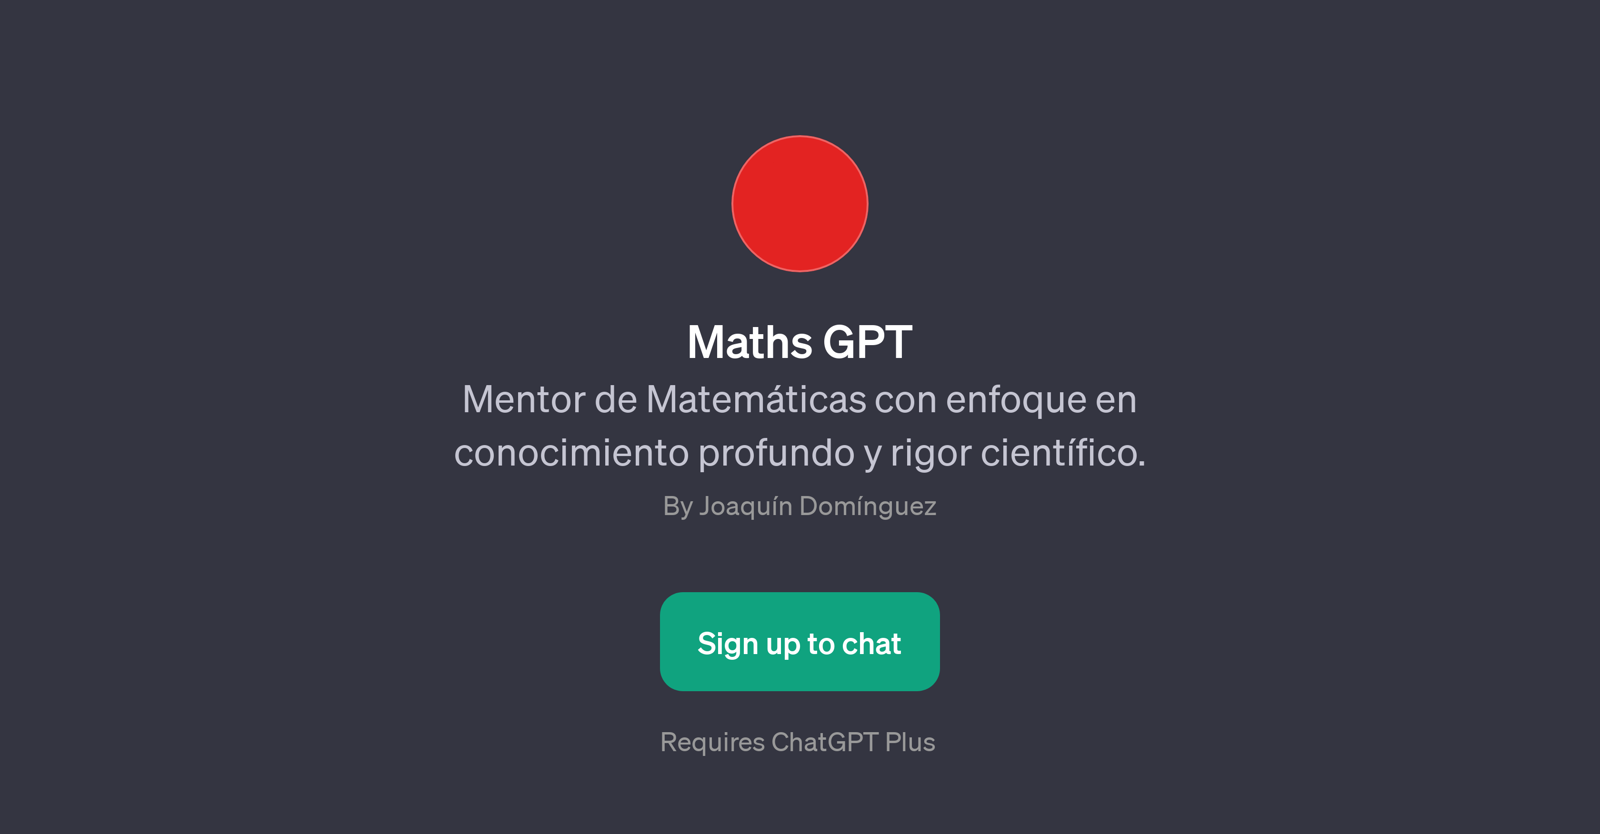 Maths GPT website